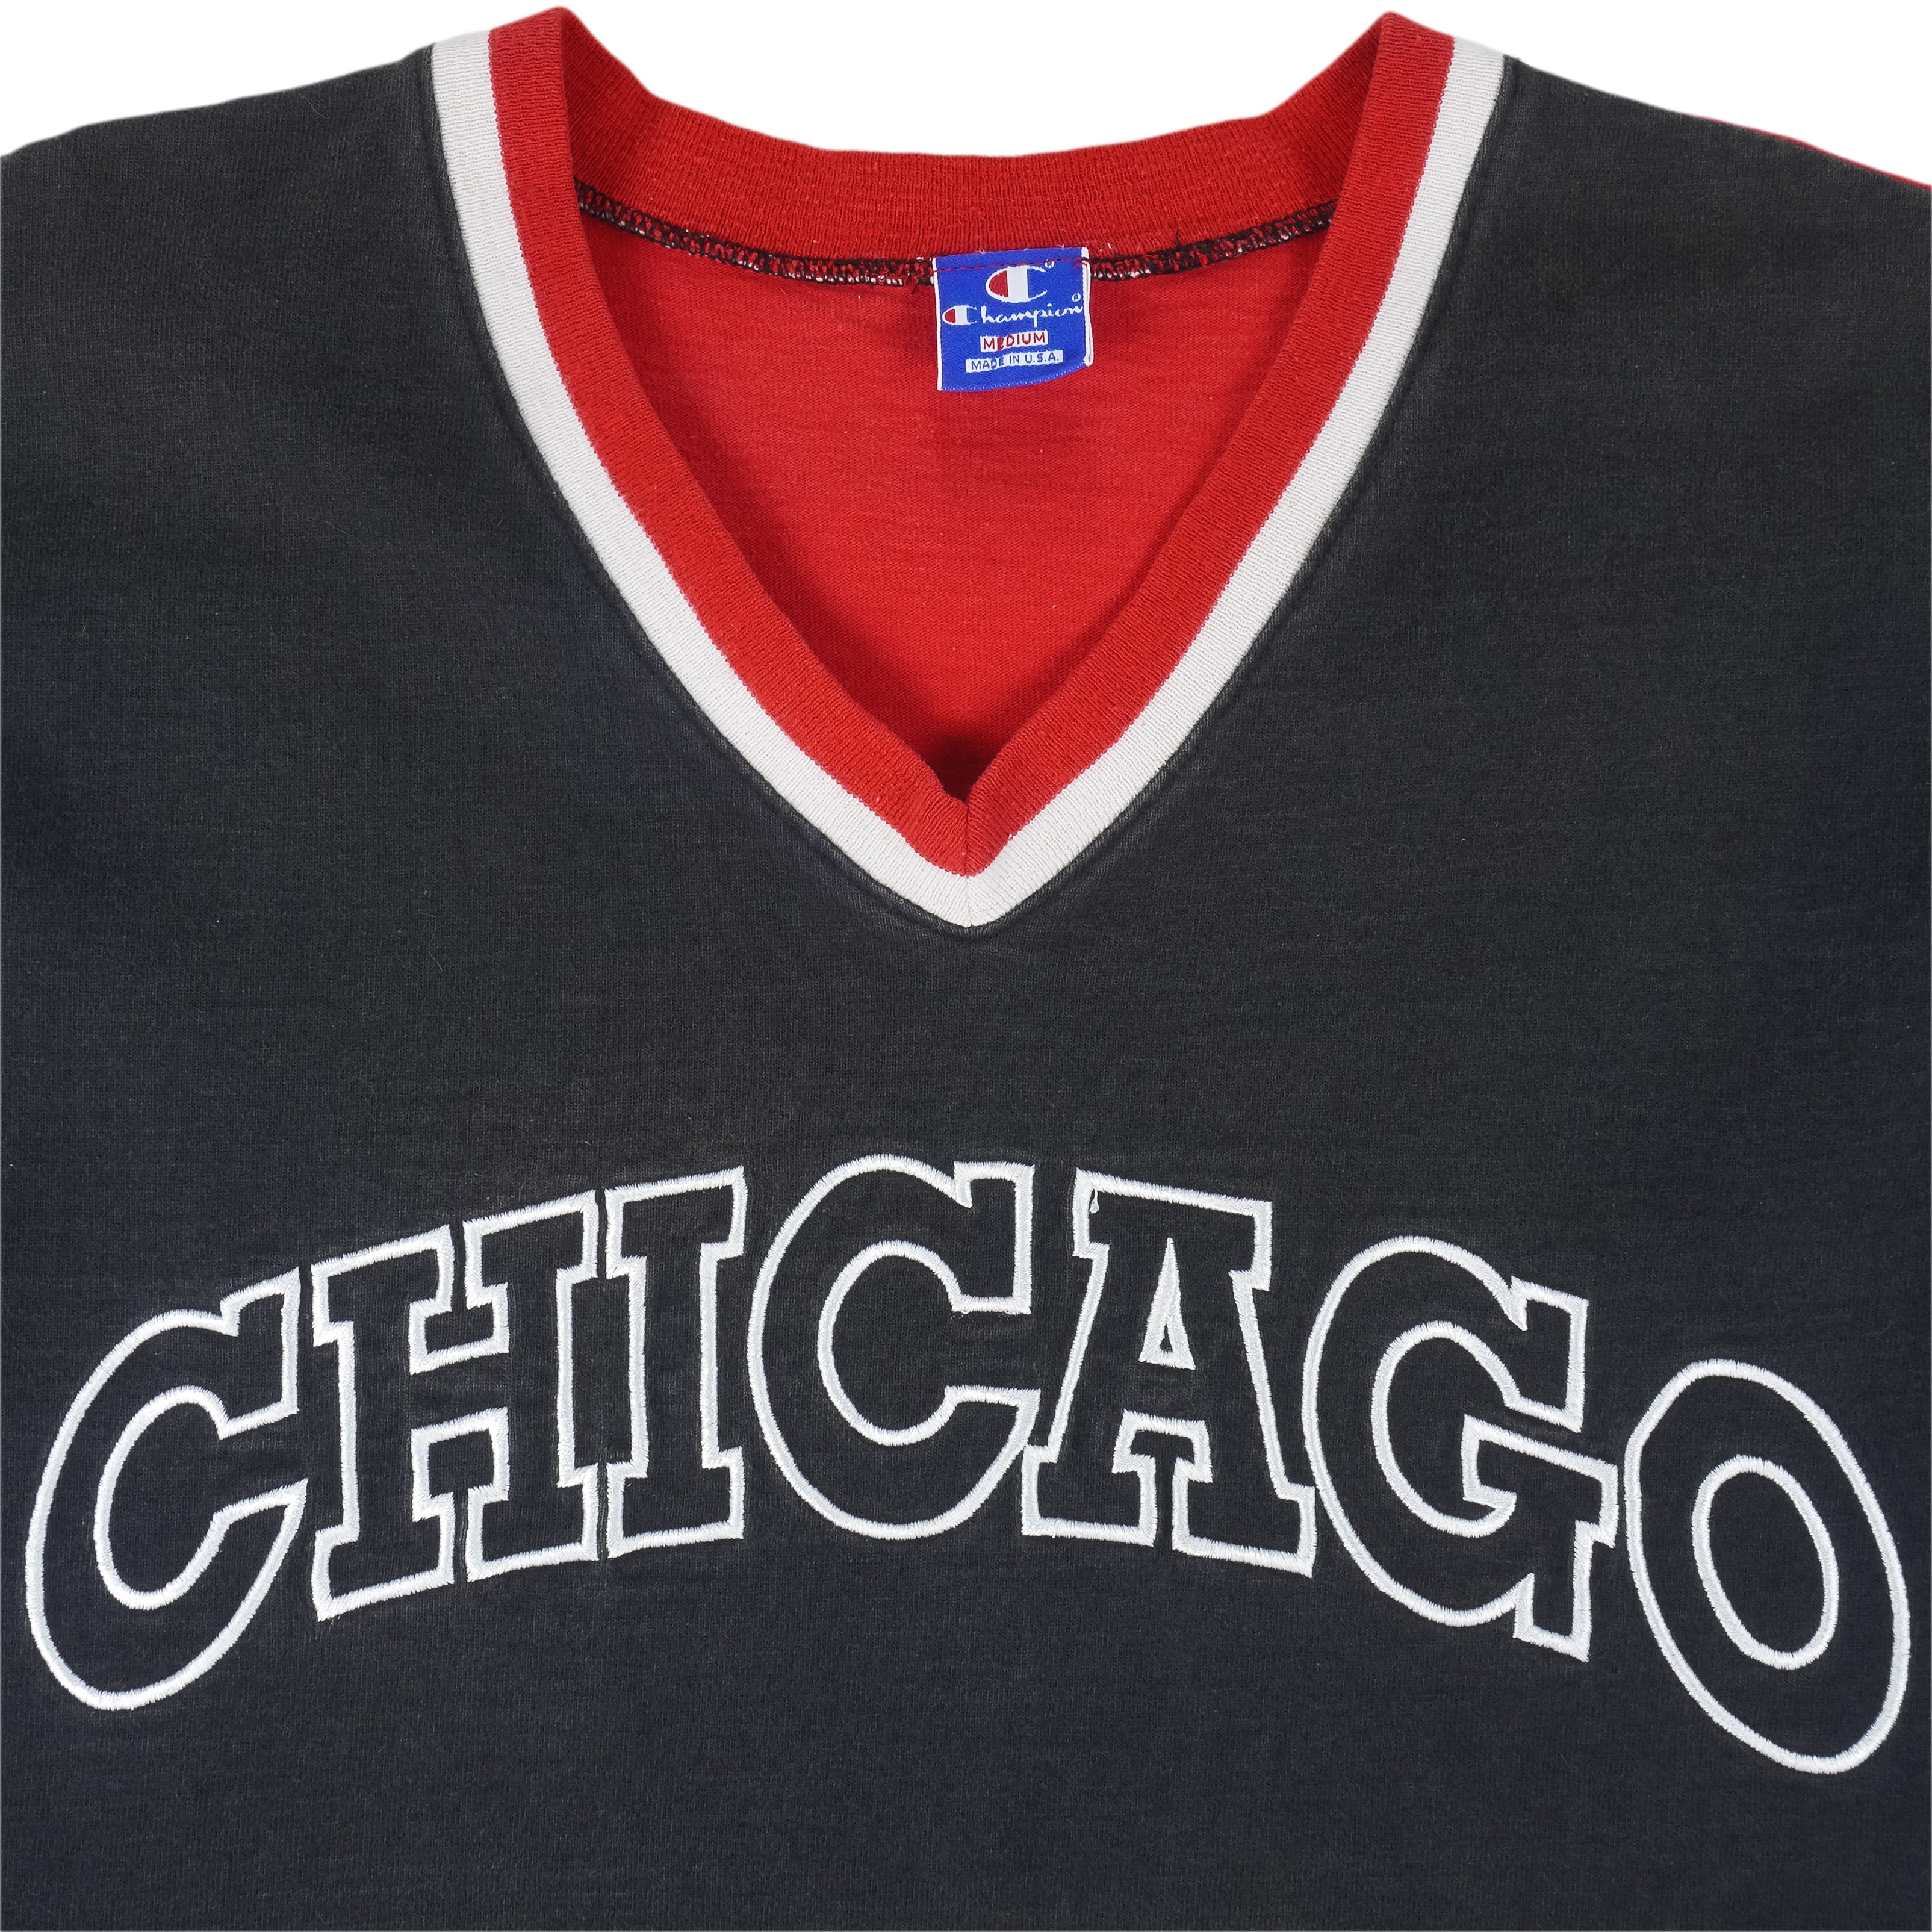 Chicago Bulls Jerseys & Teamwear, NBA Merchandise